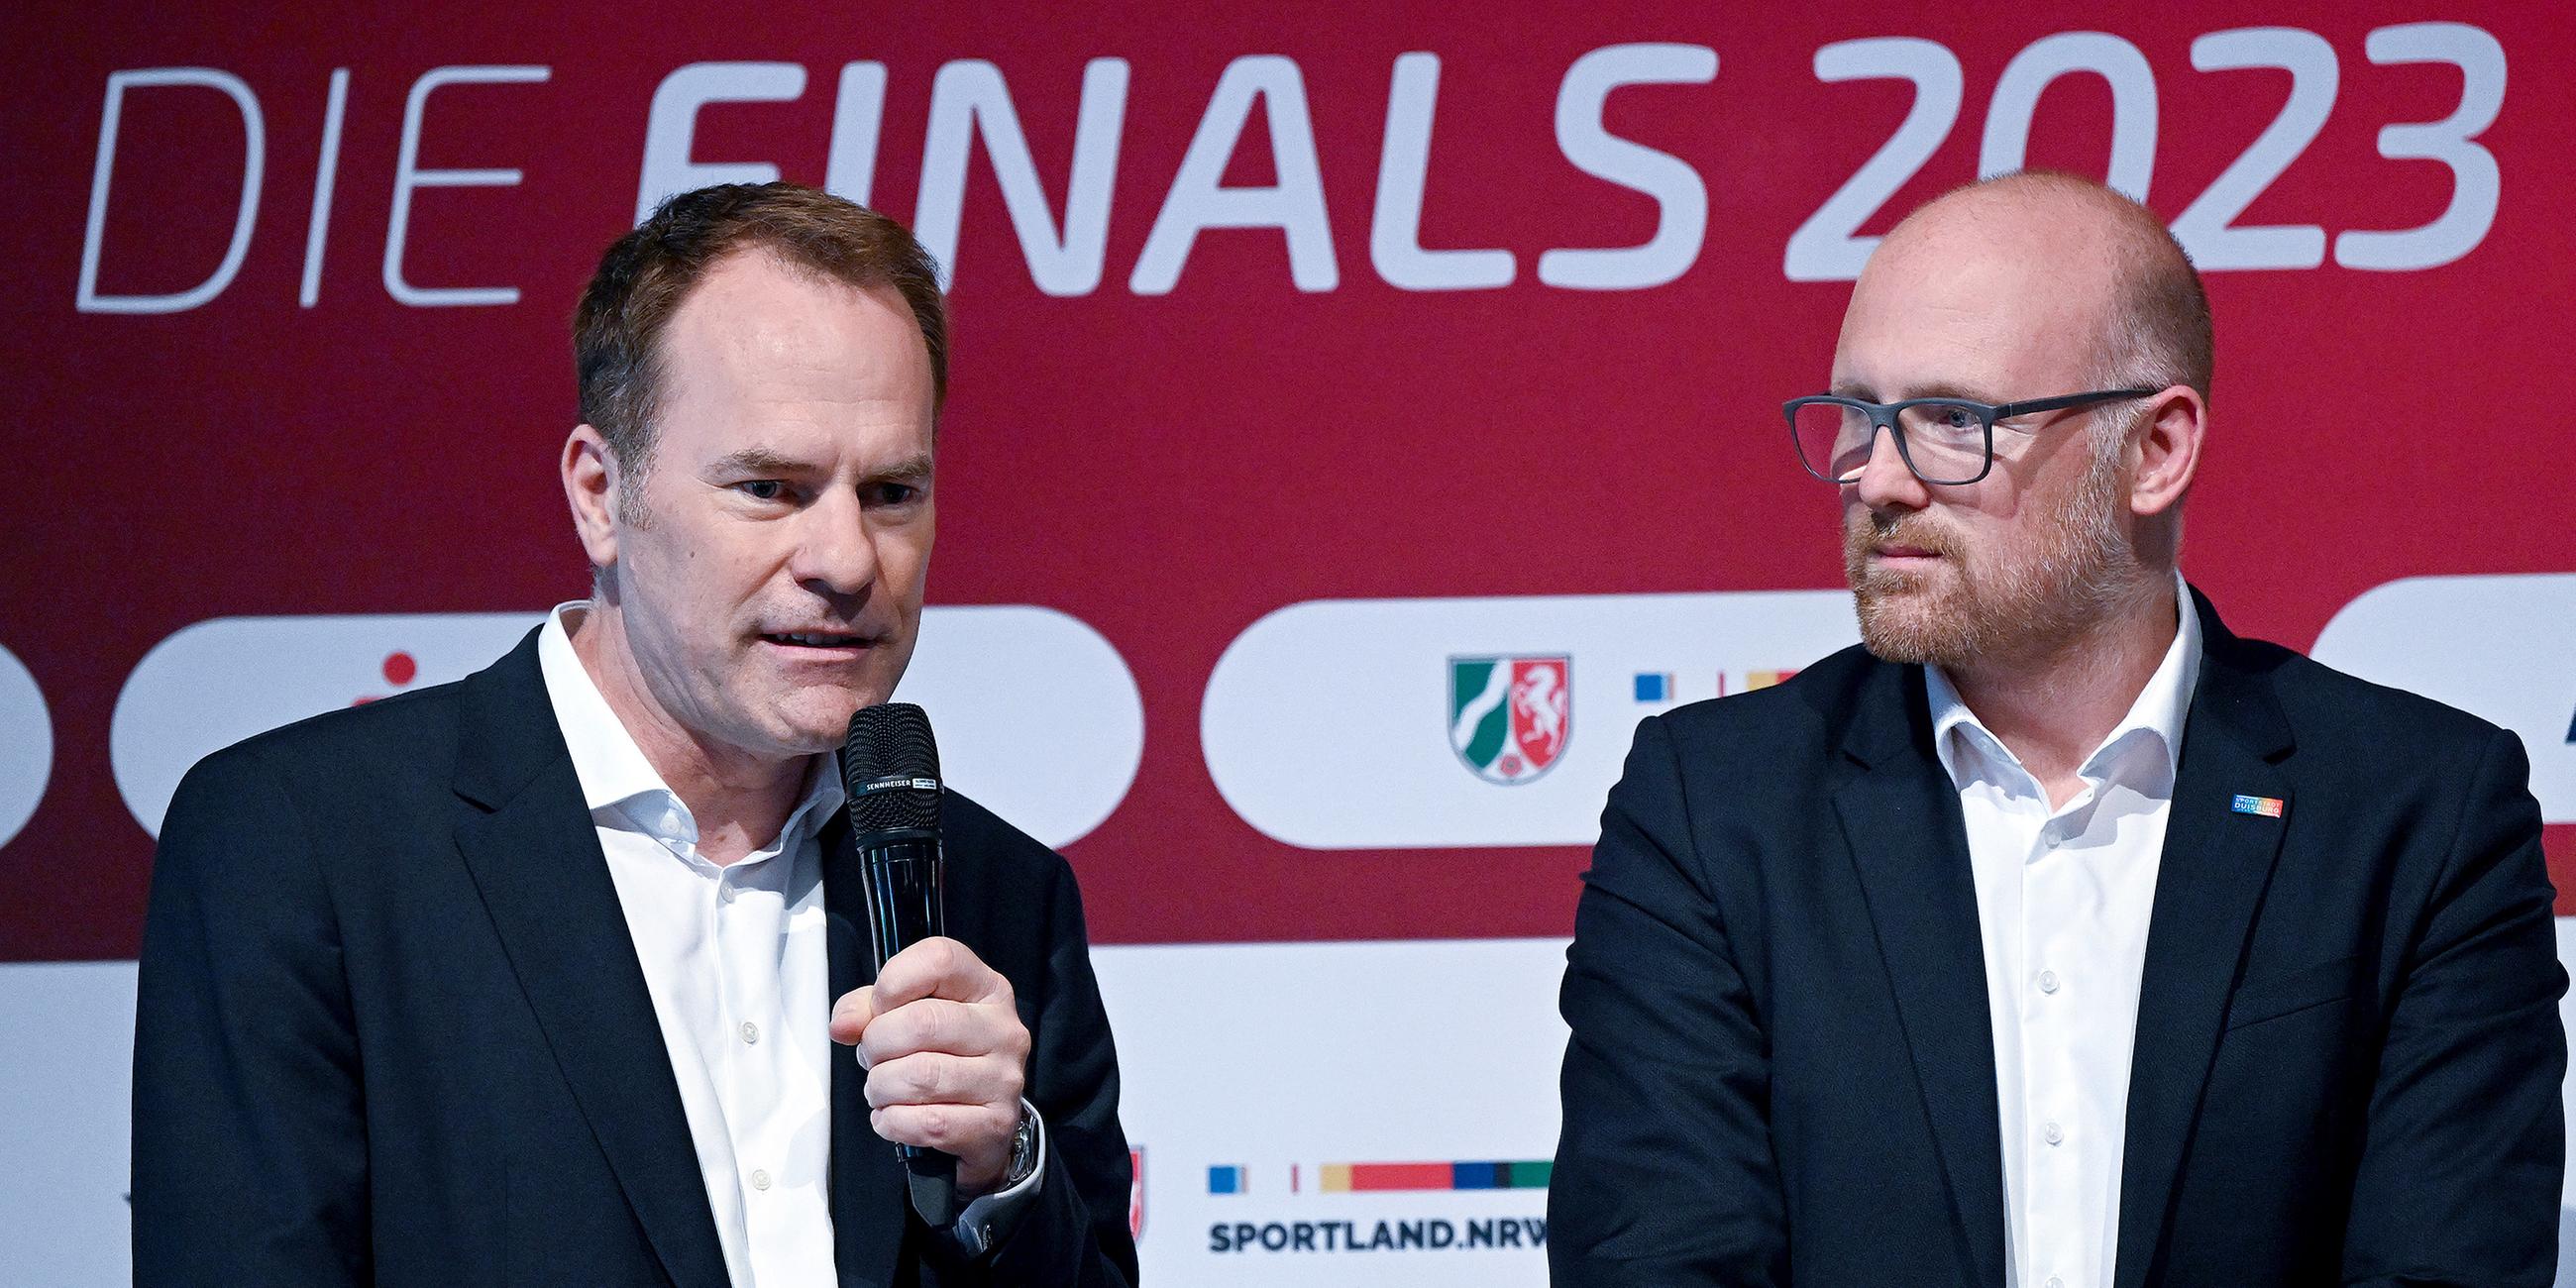 Die beiden Oberbürgermeister Stephan Keller (CDU, Düsseldorf, l.) und Sören Link (SPD, Duisburg) bei einer Pressekonferenz zu den Finals 2023.